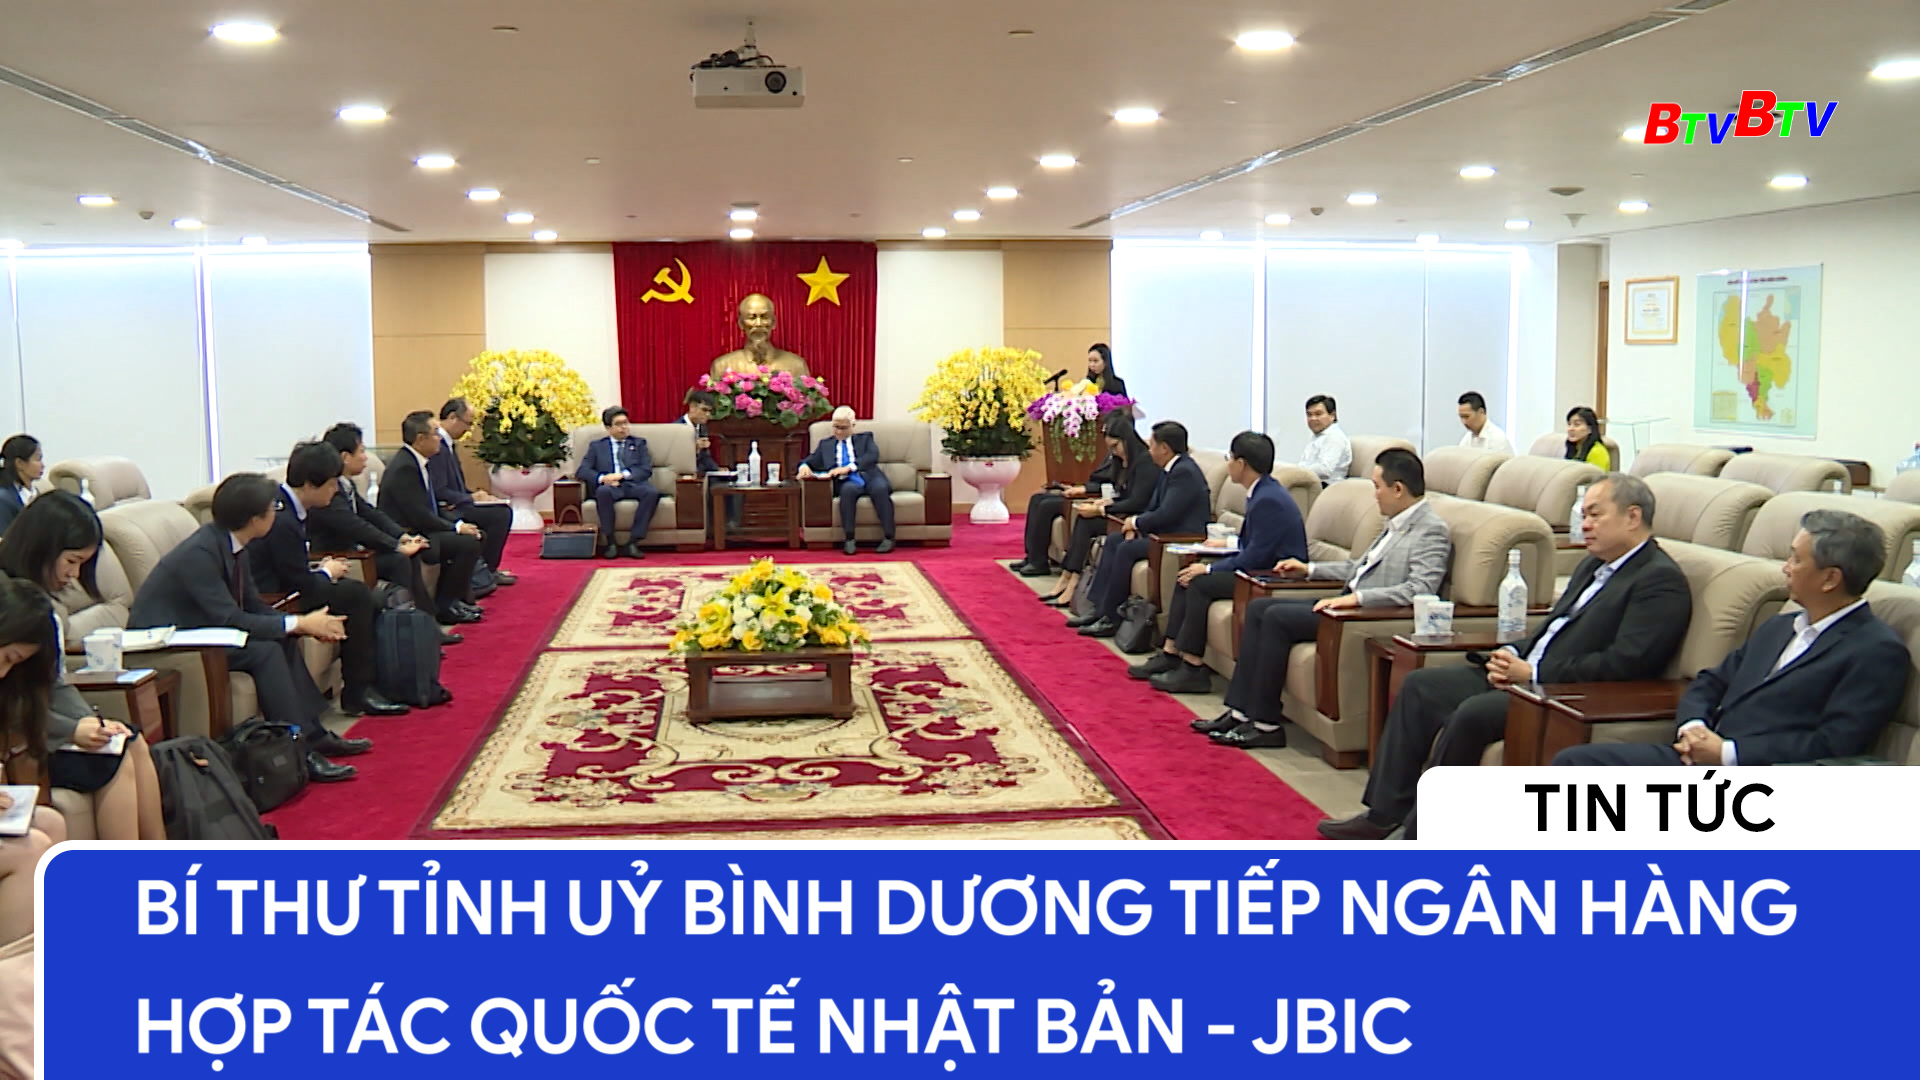 Bí thư tỉnh ủy Bình Dương tiếp Ngân hàng hợp tác Quốc tế Nhật Bản - JBIC	